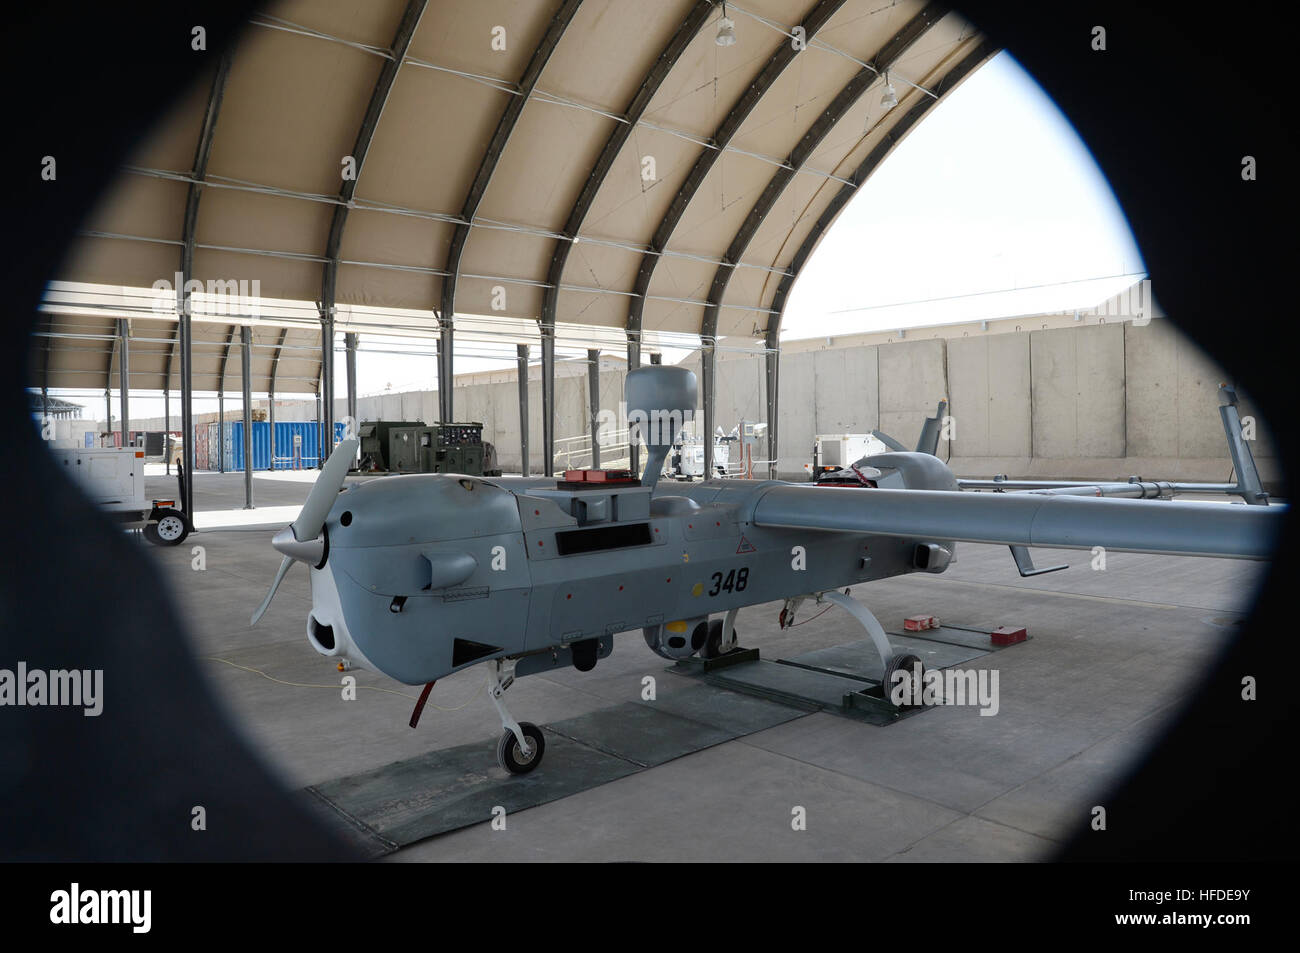 Aeródromo de Kandahar, Afganistán (Ago. 6, 2015) UN MQ-5B Hunter está dispuesta en una cabeza de cobre (copperhead) Task Force Tactical Vehículo Aéreo No Tripulado desapego hangar en el Aeródromo de Kandahar. El MQ-5B es un multi-misión UAV equipado con radar de apertura sintética en miniatura, o cabeza de cobre (copperhead) sistema para detectar artefactos explosivos improvisados con gran éxito en Afganistán para la coalición y las fuerzas de seguridad afganas. (Ee.Uu. Foto de la Marina por el teniente Kristine Volk/liberado) UAV MQ-5B Hunter lanzamiento y recuperación en Kandahar Airfield 150806-N-SQ656-801 Foto de stock